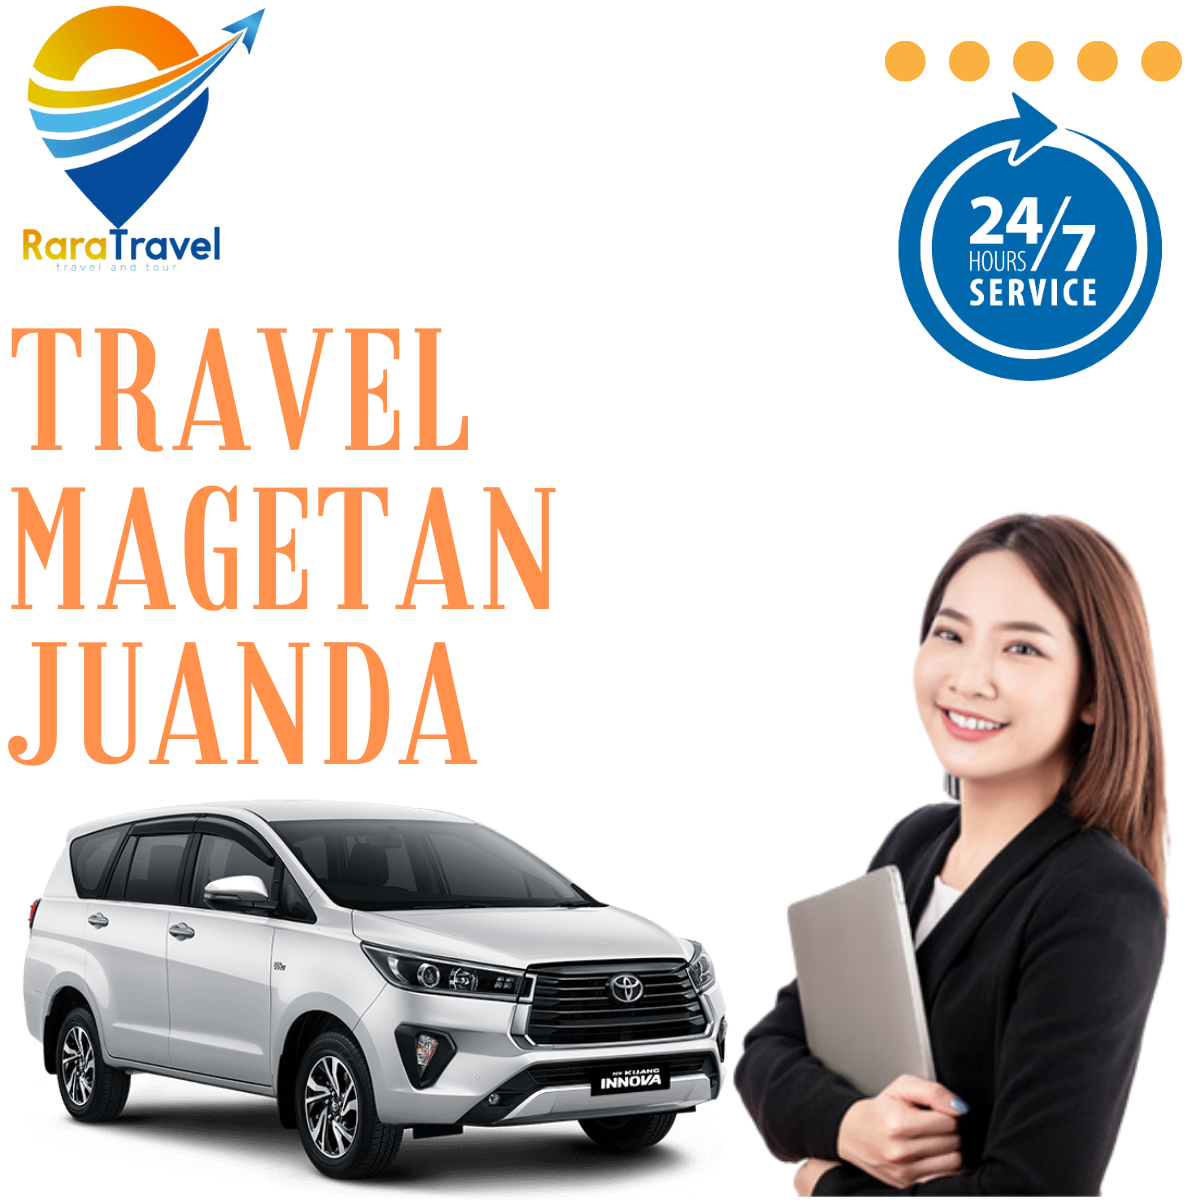 Travel Magetan ke Bandara Juanda Murah Layanan PP 24 Jam - RARATRAVEL.ID